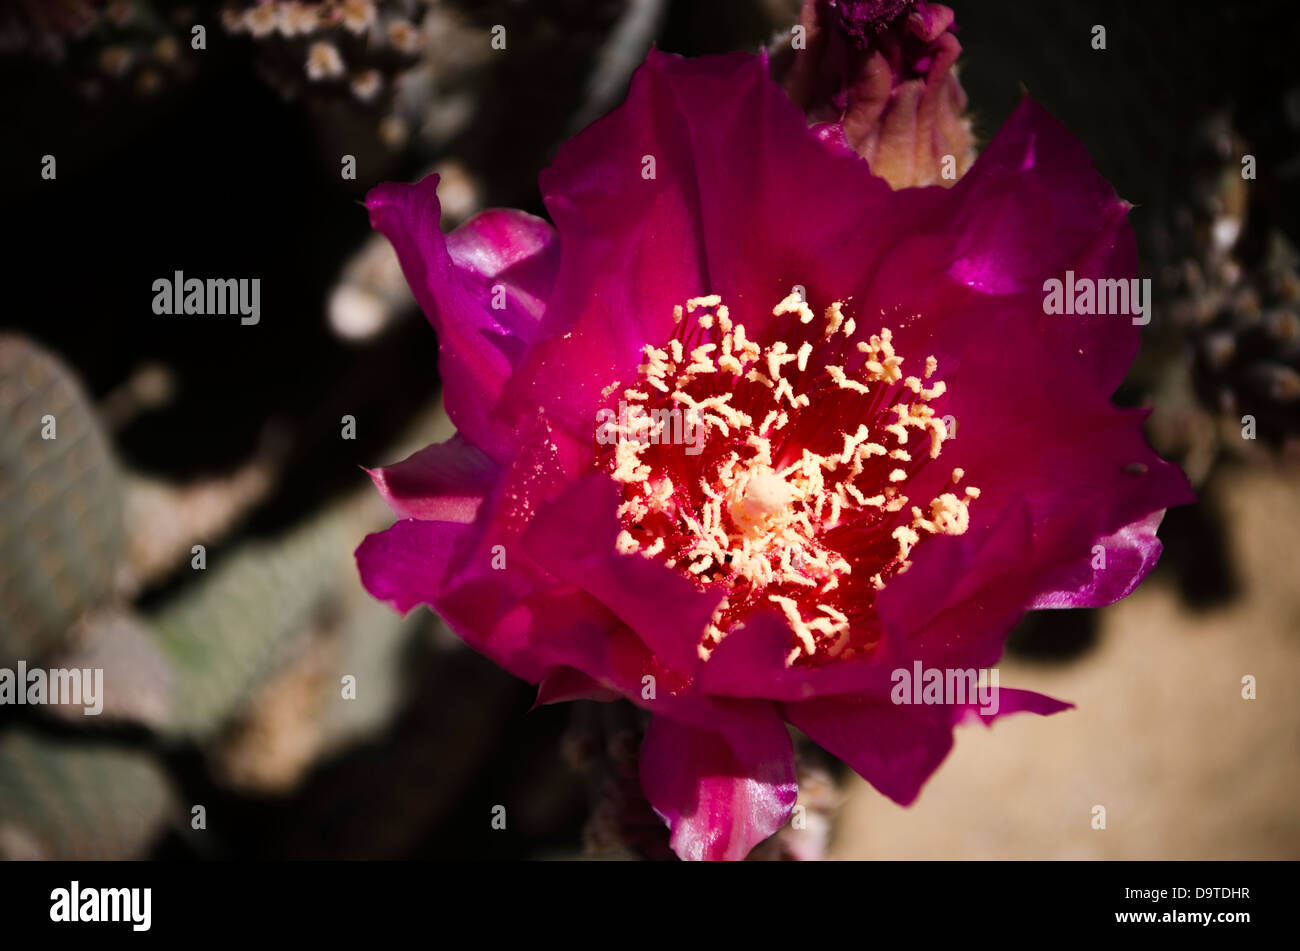 desert cactus flower in bloom Stock Photo